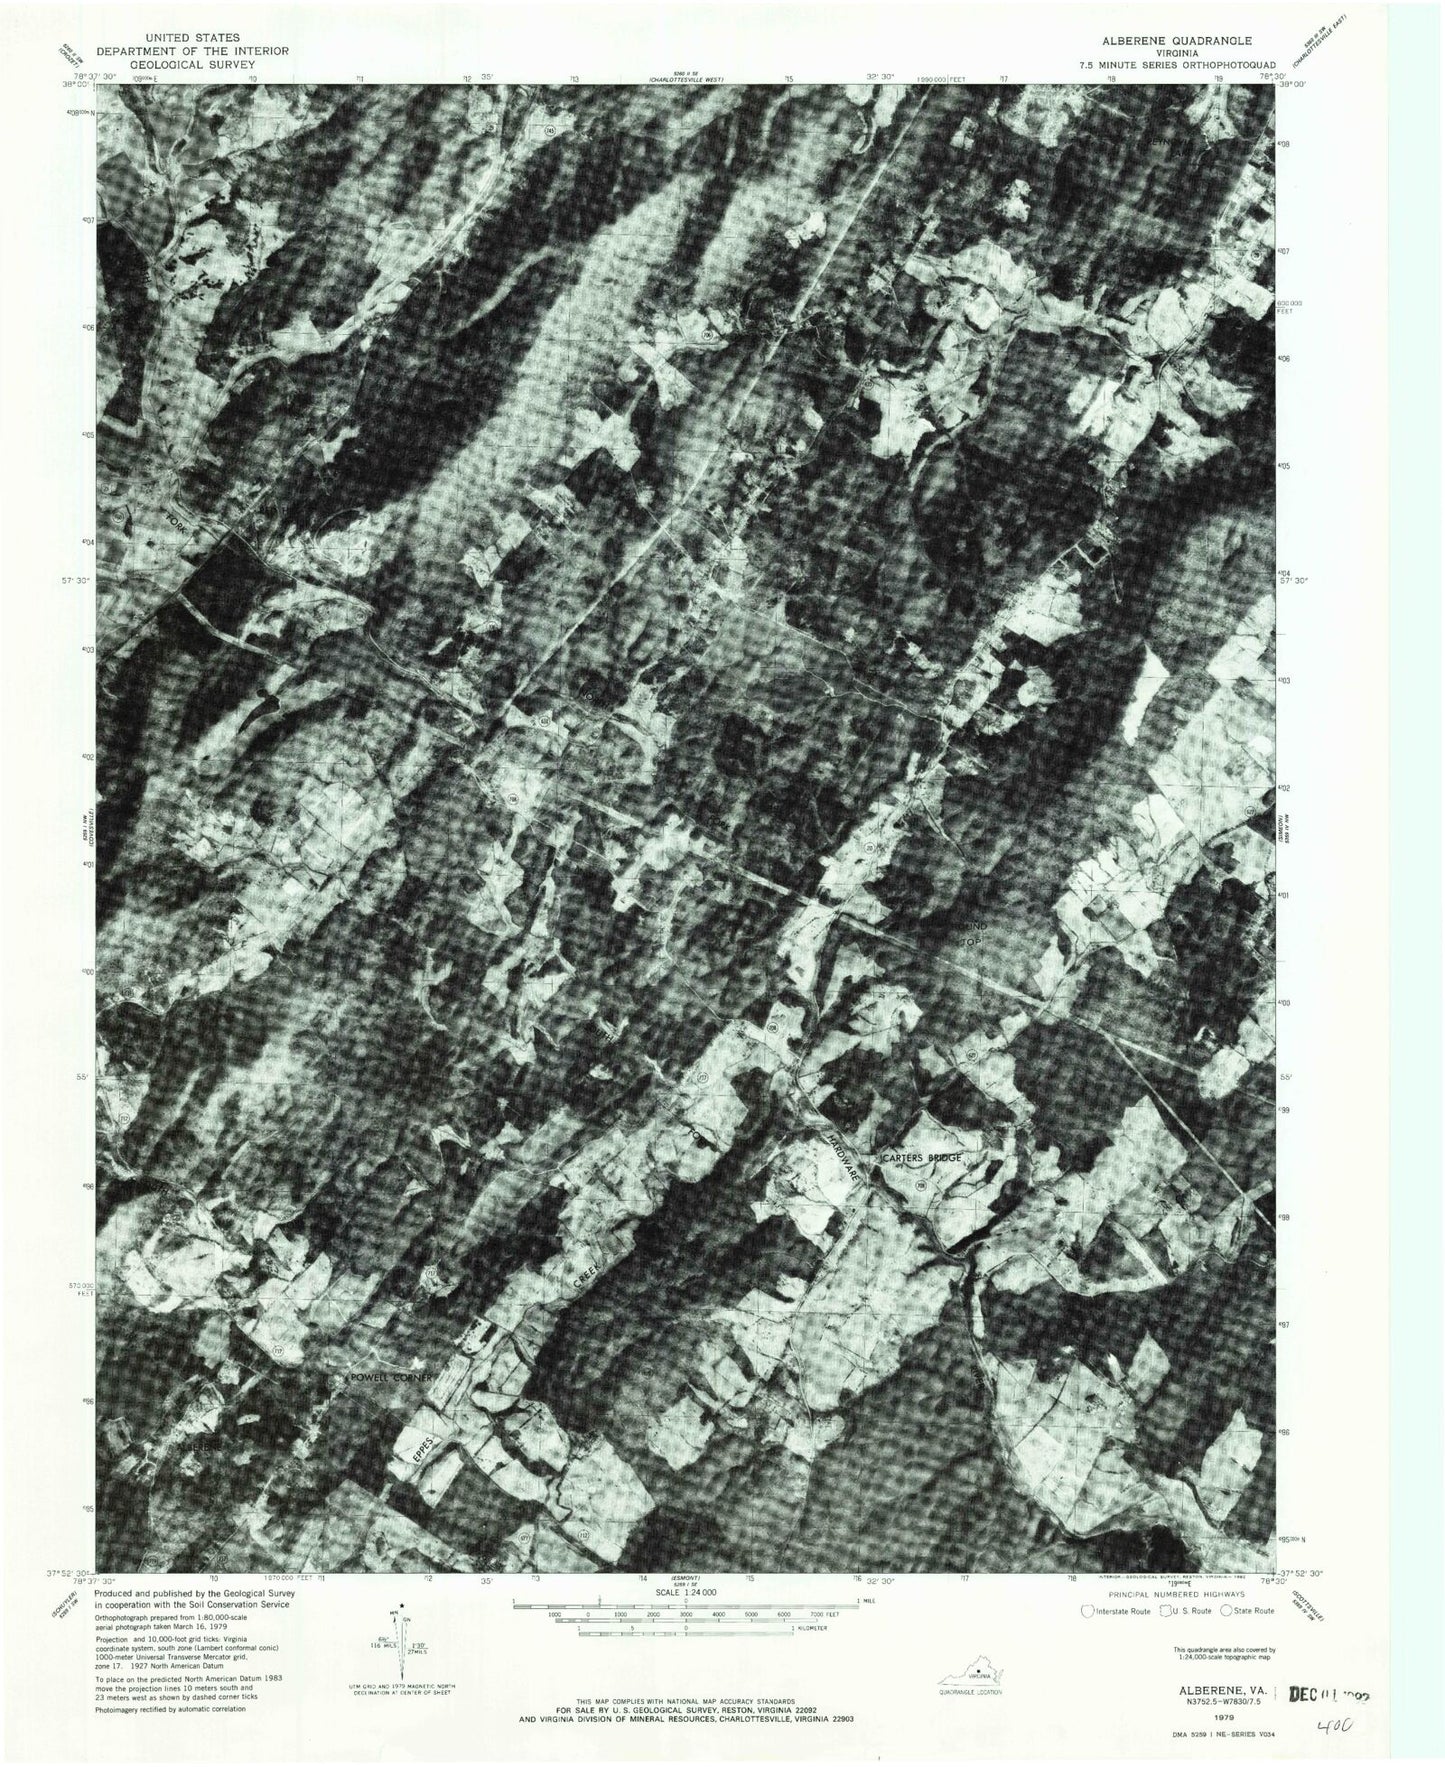 Classic USGS Alberene Virginia 7.5'x7.5' Topo Map Image